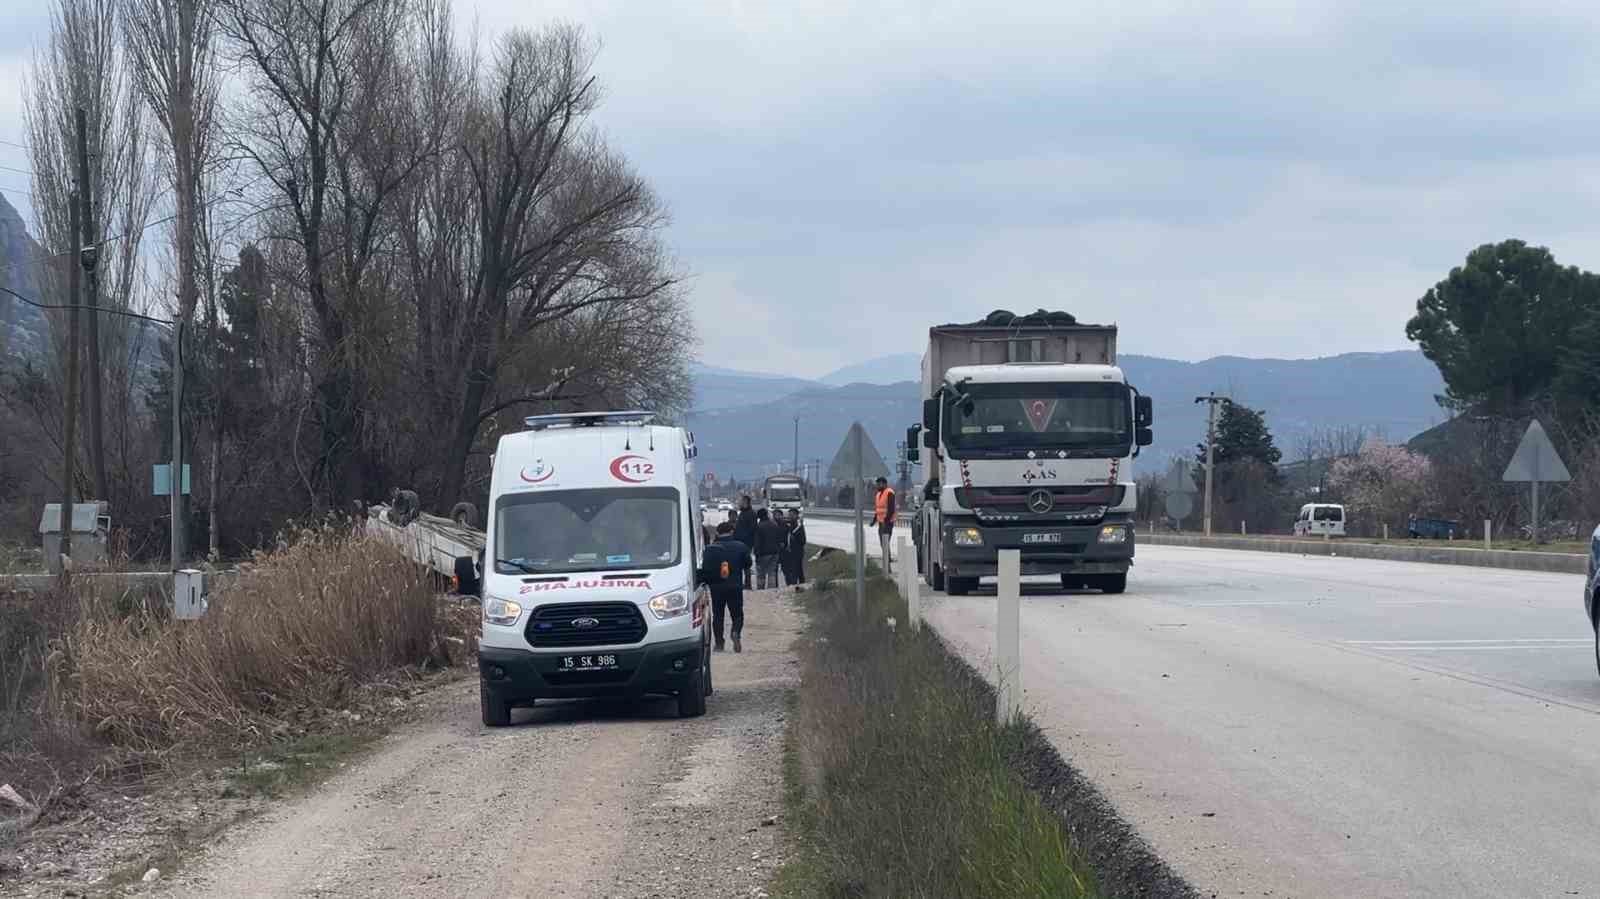 Burdur’da lastiği patlayan araç takla attı: 1 yaralı
